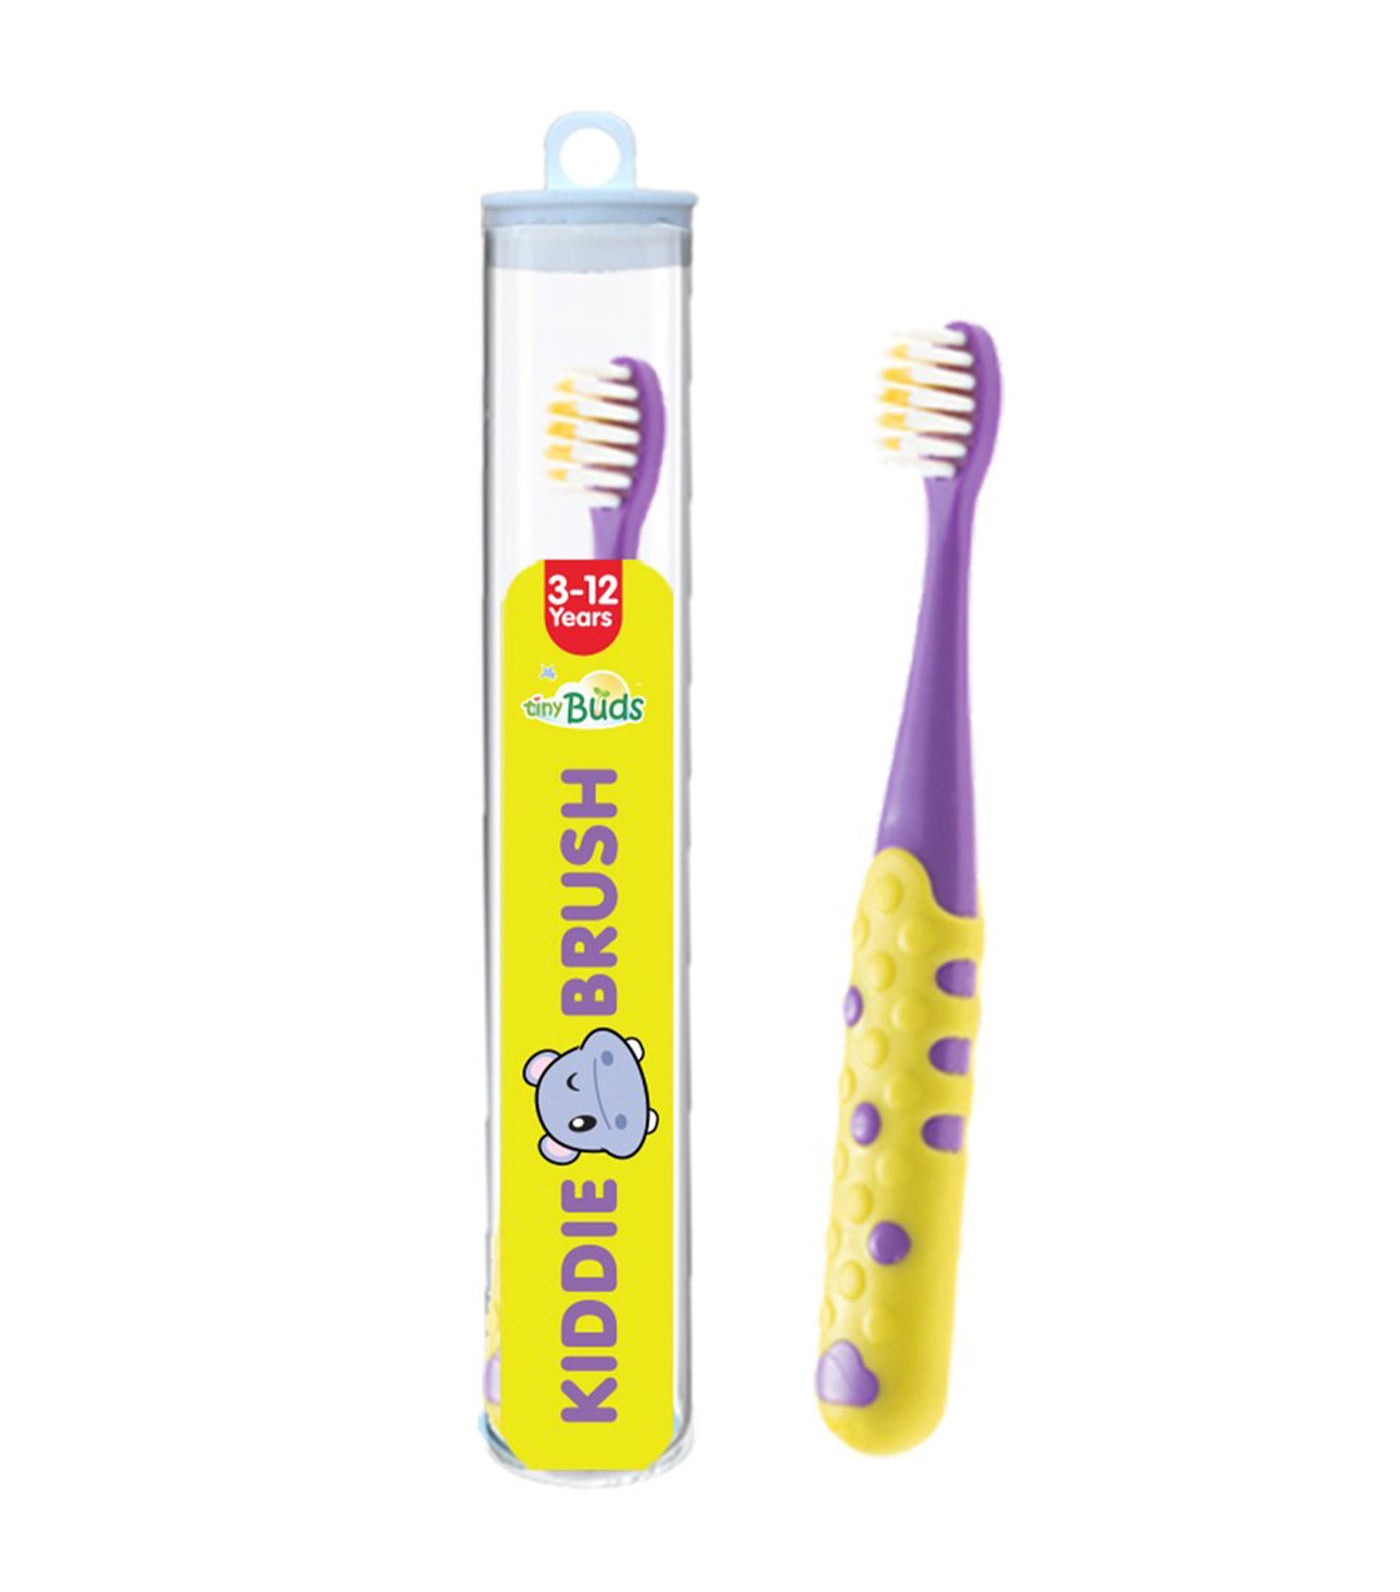 tiny buds yellow and purple kiddie toothbrush (3-12 years)